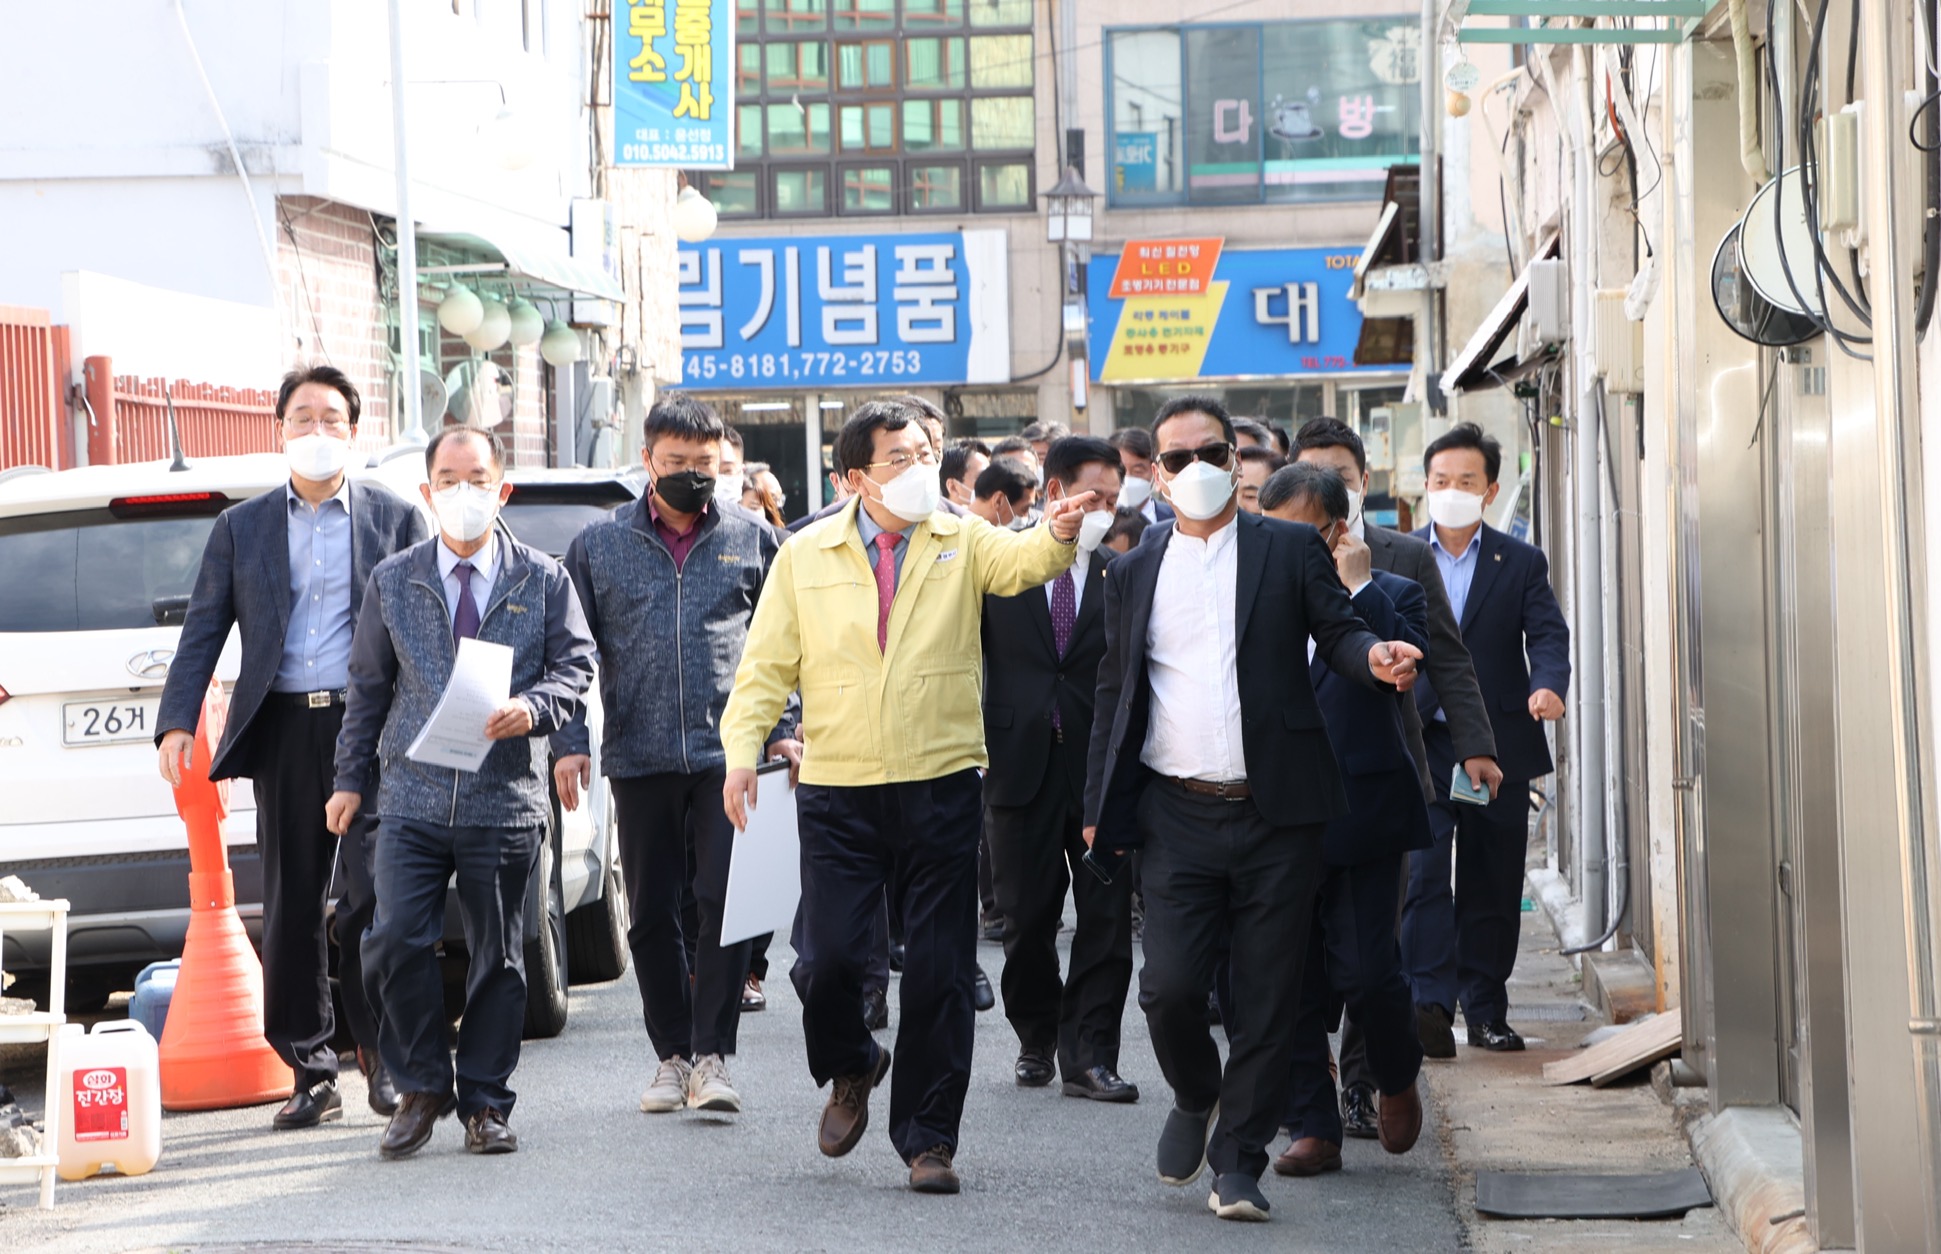 민선 7기 공약사업과 주요 시정현황을 점검